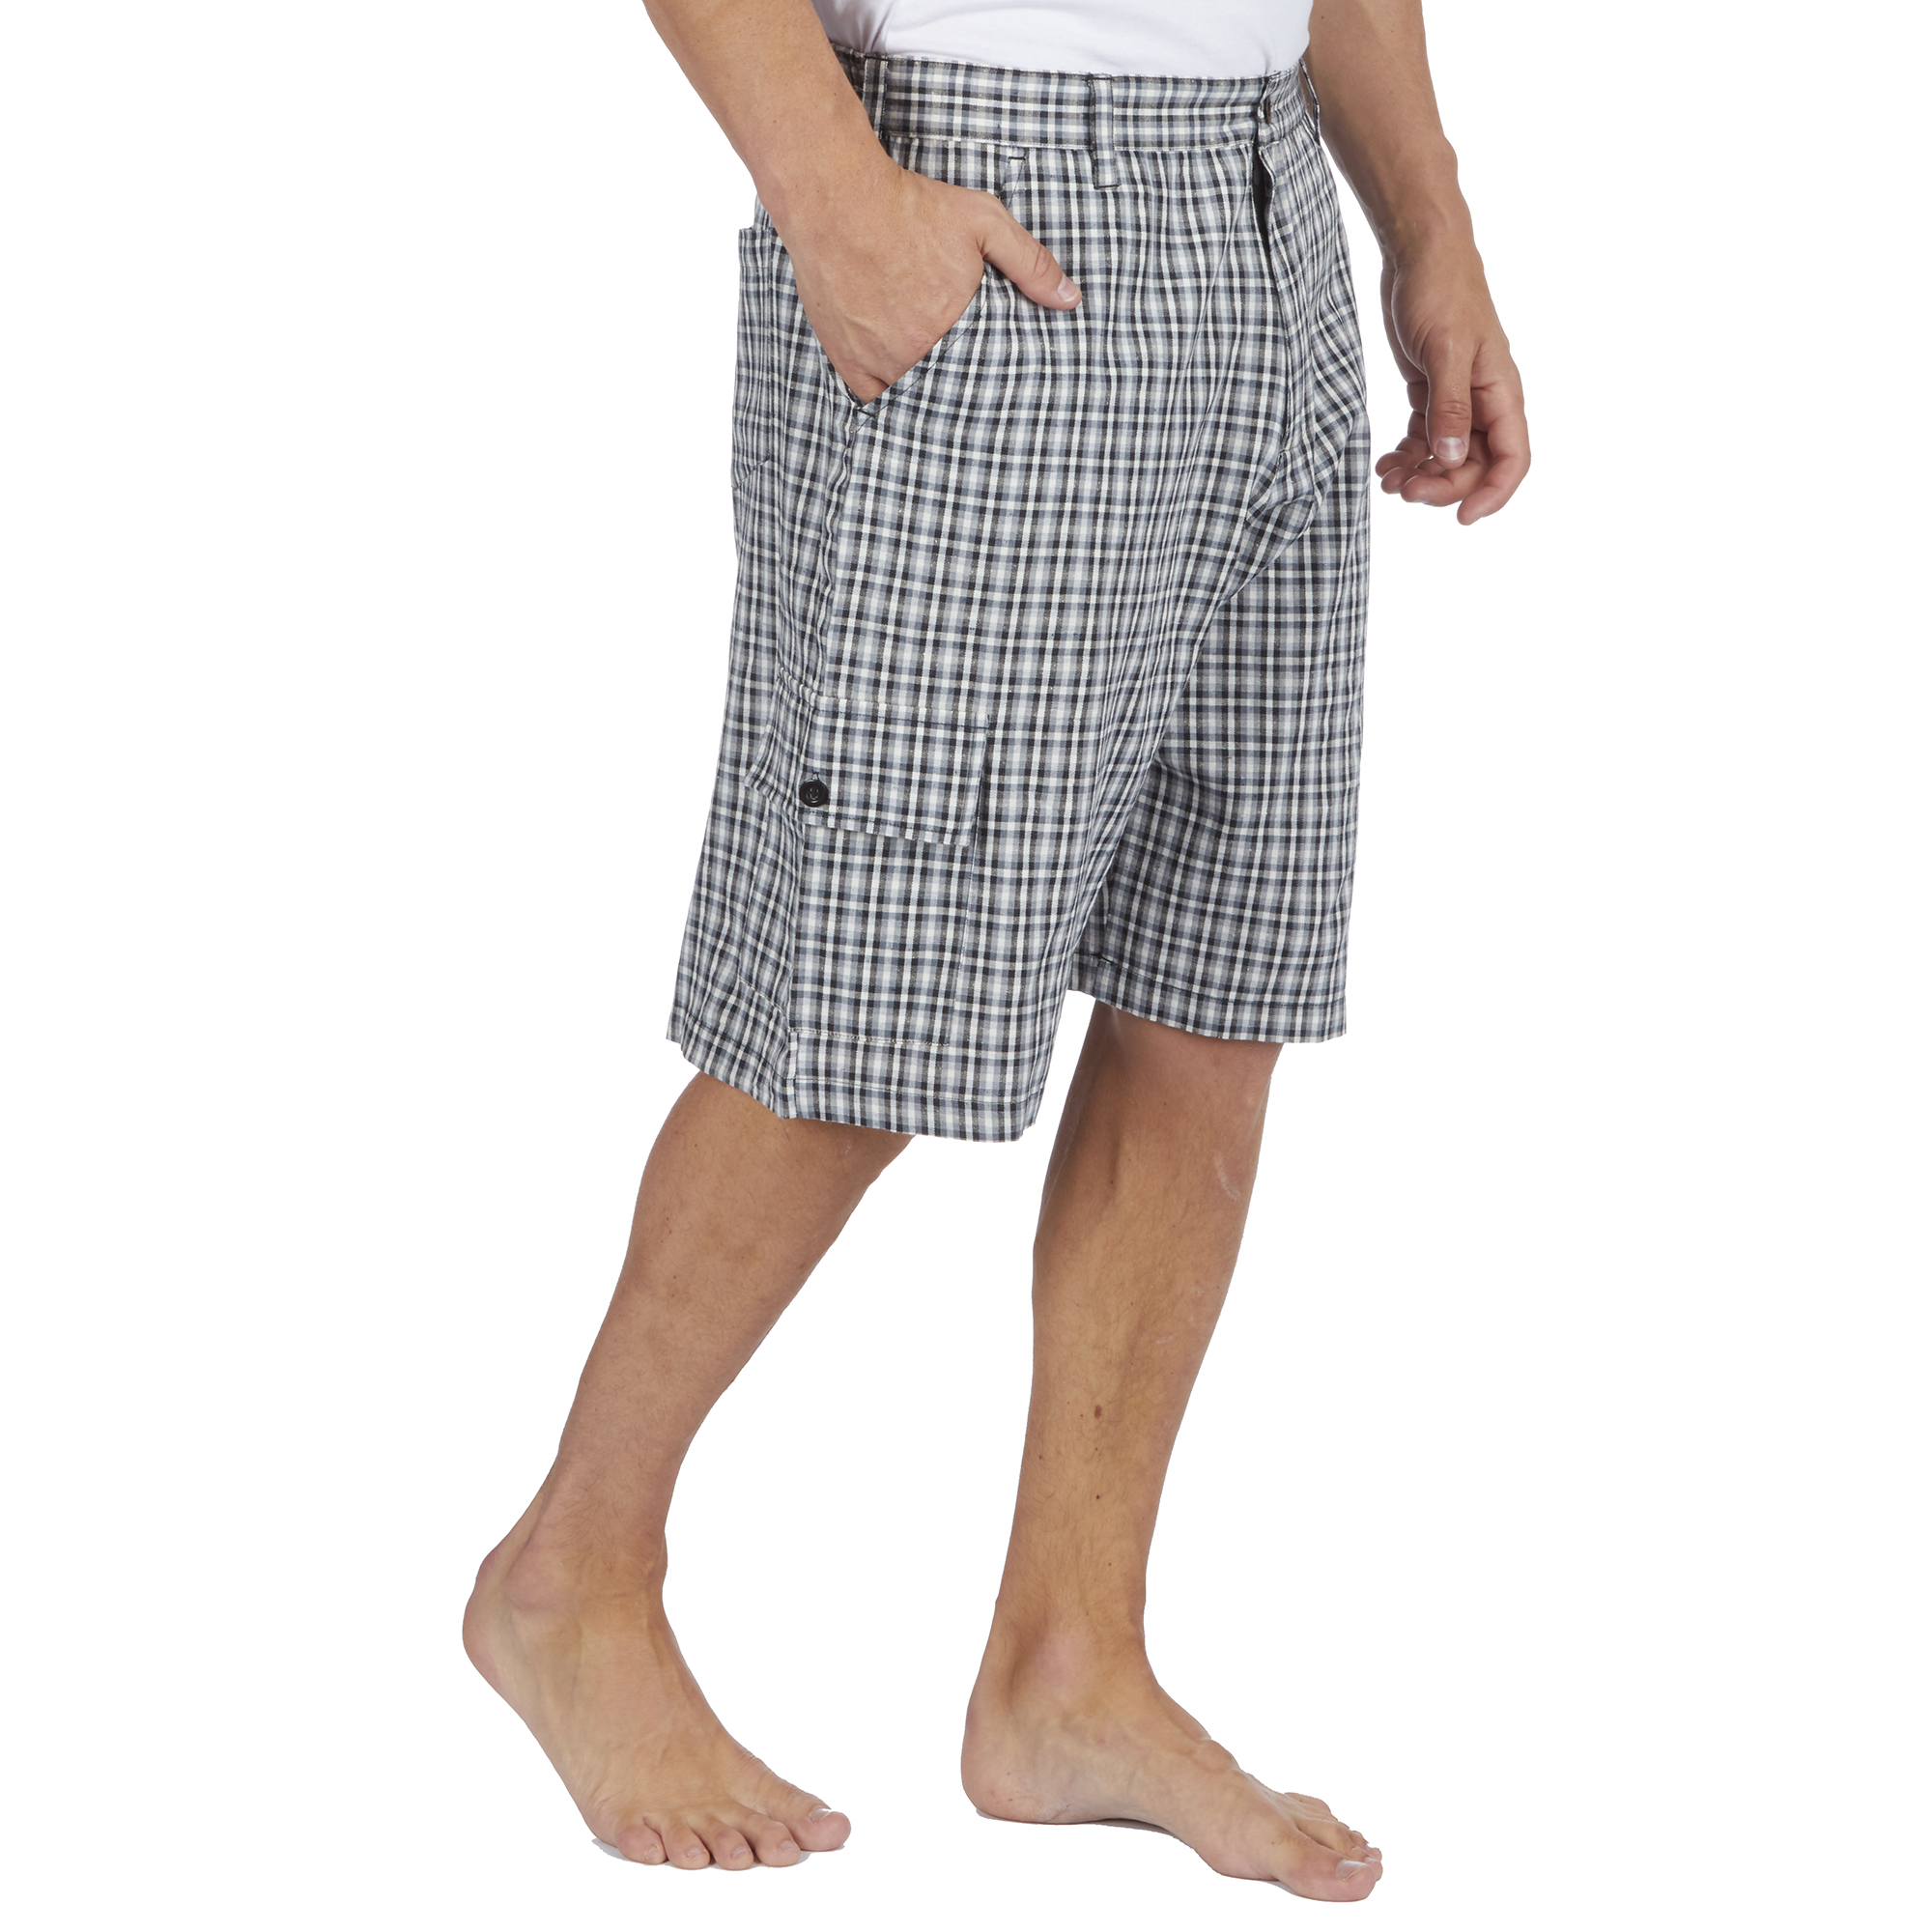 Mesdames vérifier Tissé Shorts Pantalons salon tailles 8-22 pyjamas pantalon jacquard Pjs 